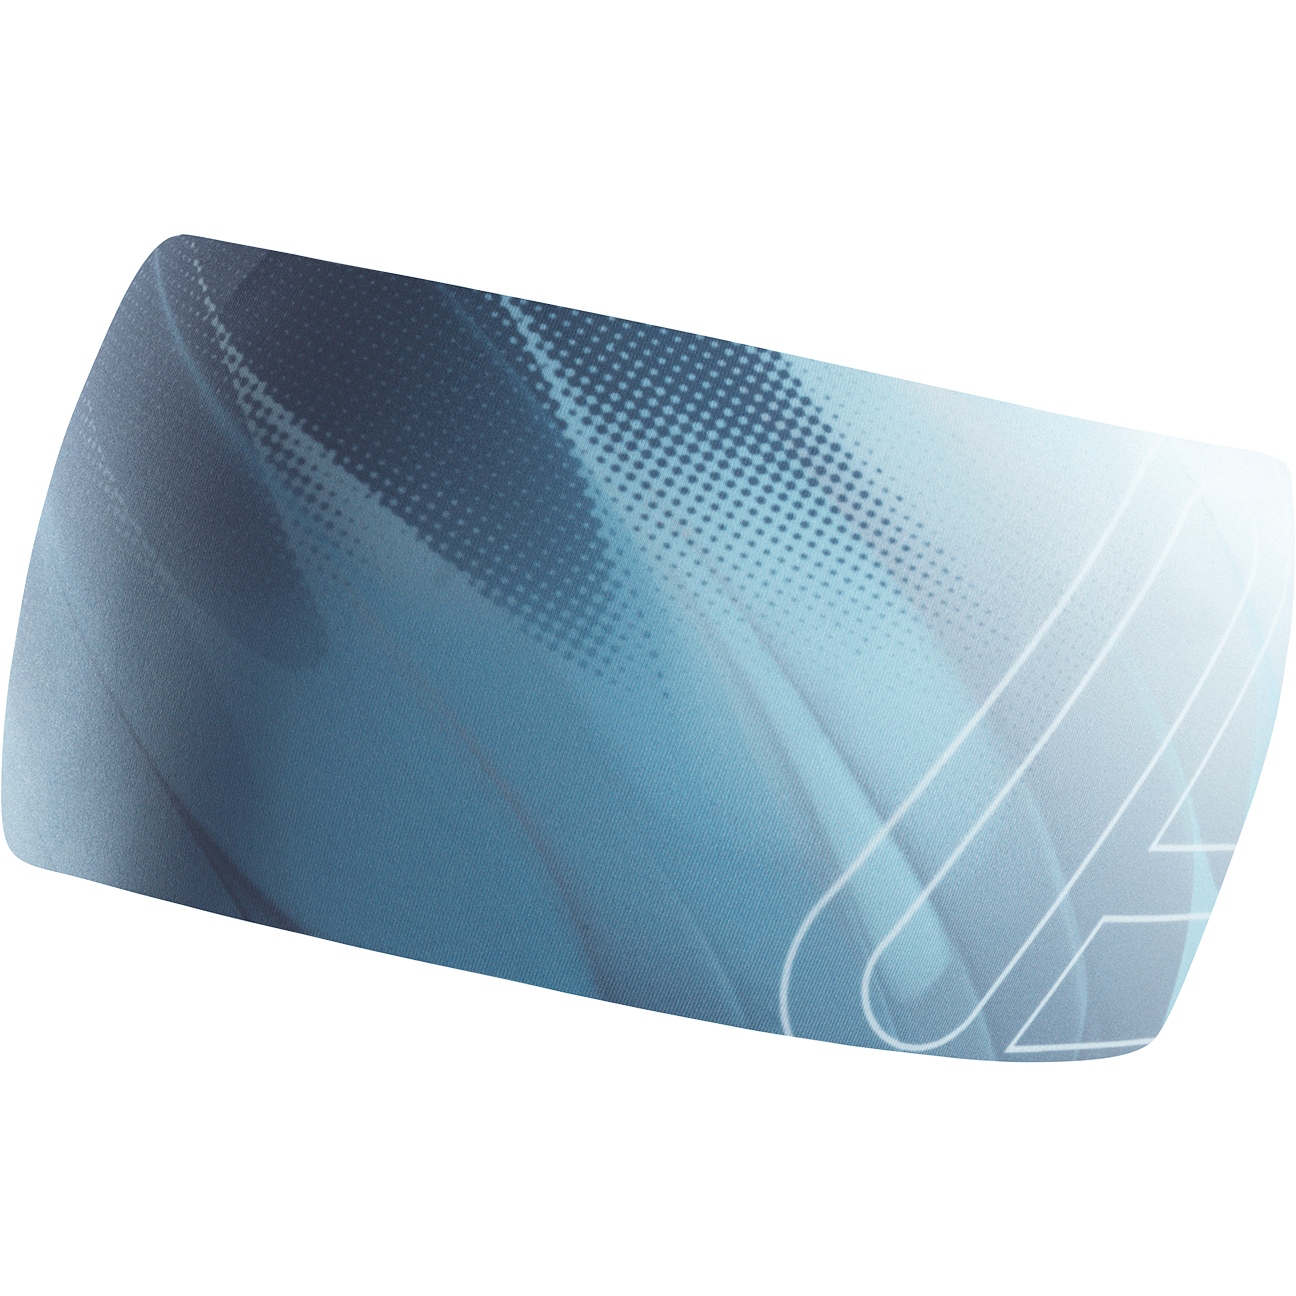 Produktbild von Löffler Open Cut Elastic Stirnband - blue bay 424